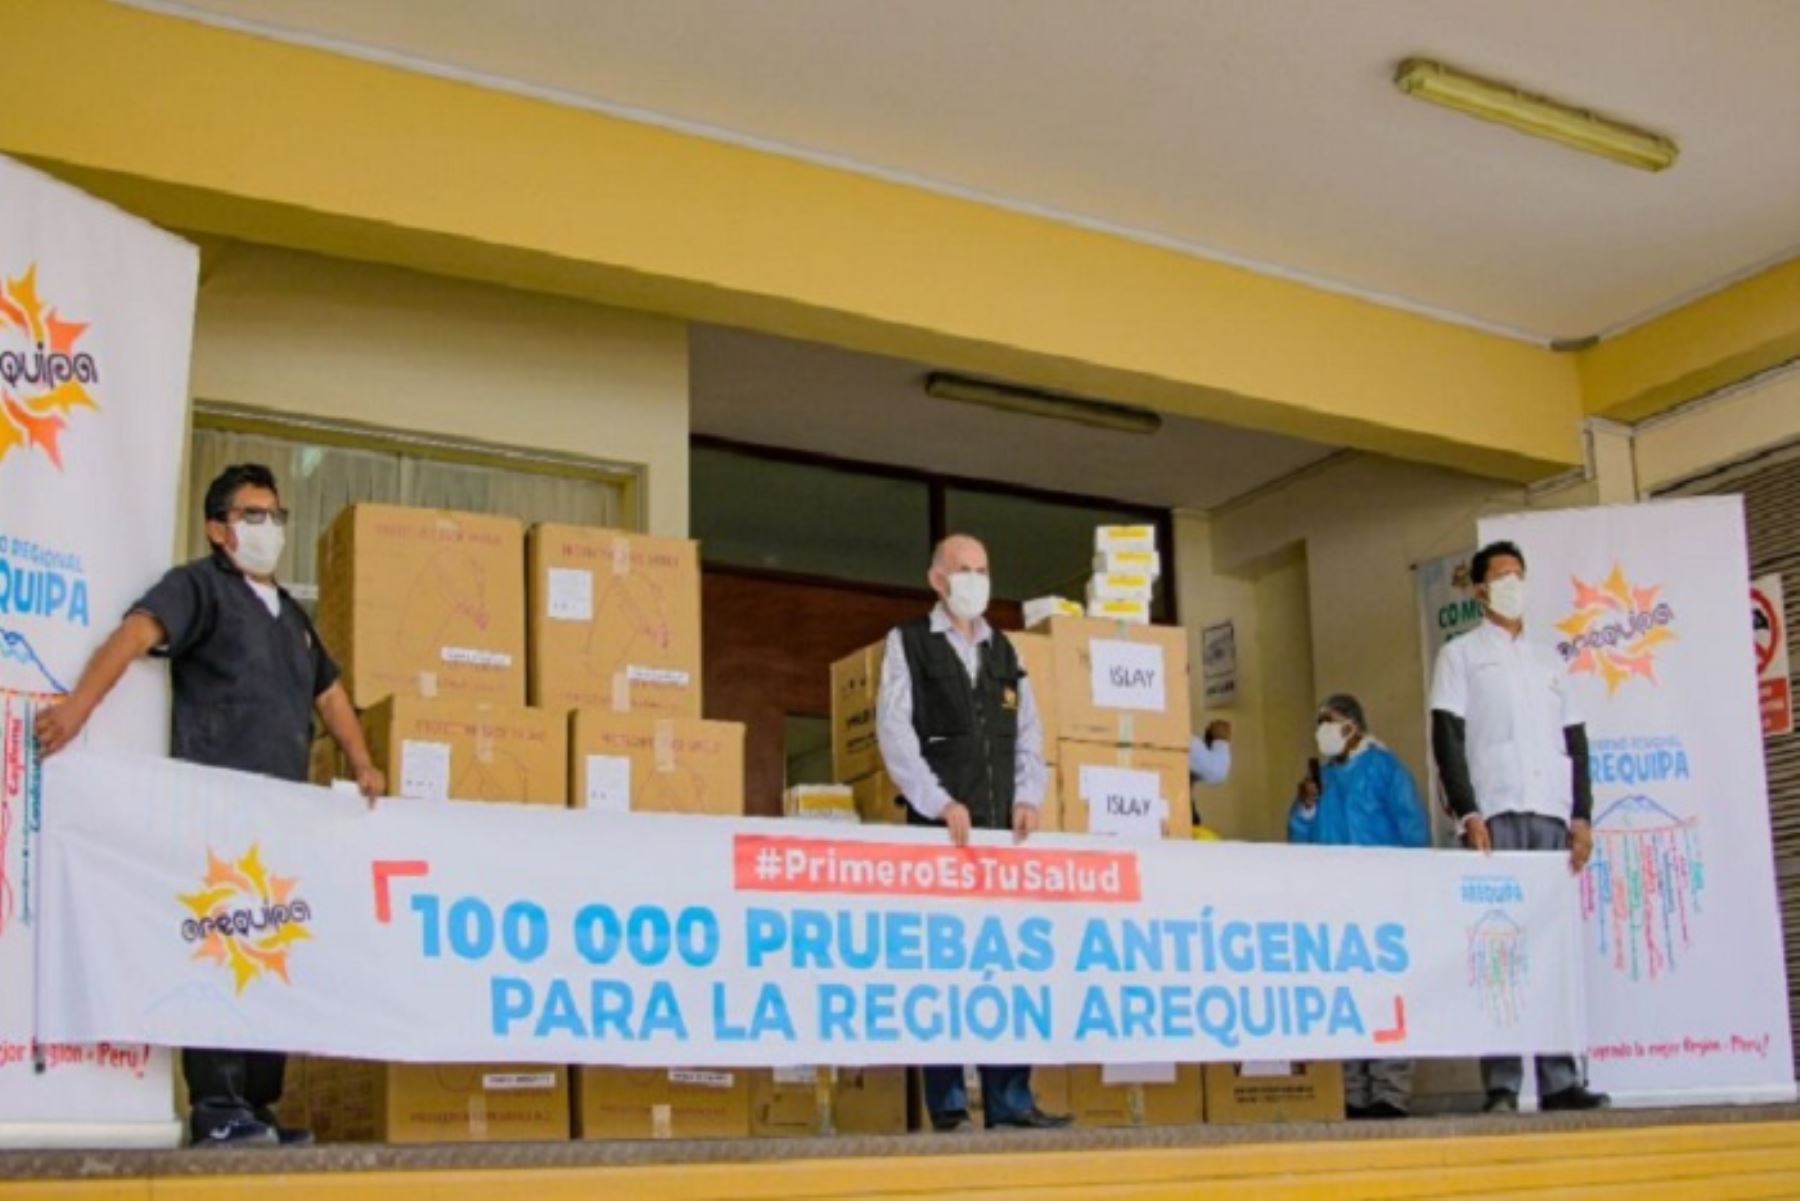 Hoy se inició la entrega de 120,000 pruebas antígenas, de las cuales 100.000 fueron transferidas por el Minsa y 20,000 las adquirió el Gobierno Regional de Arequipa.